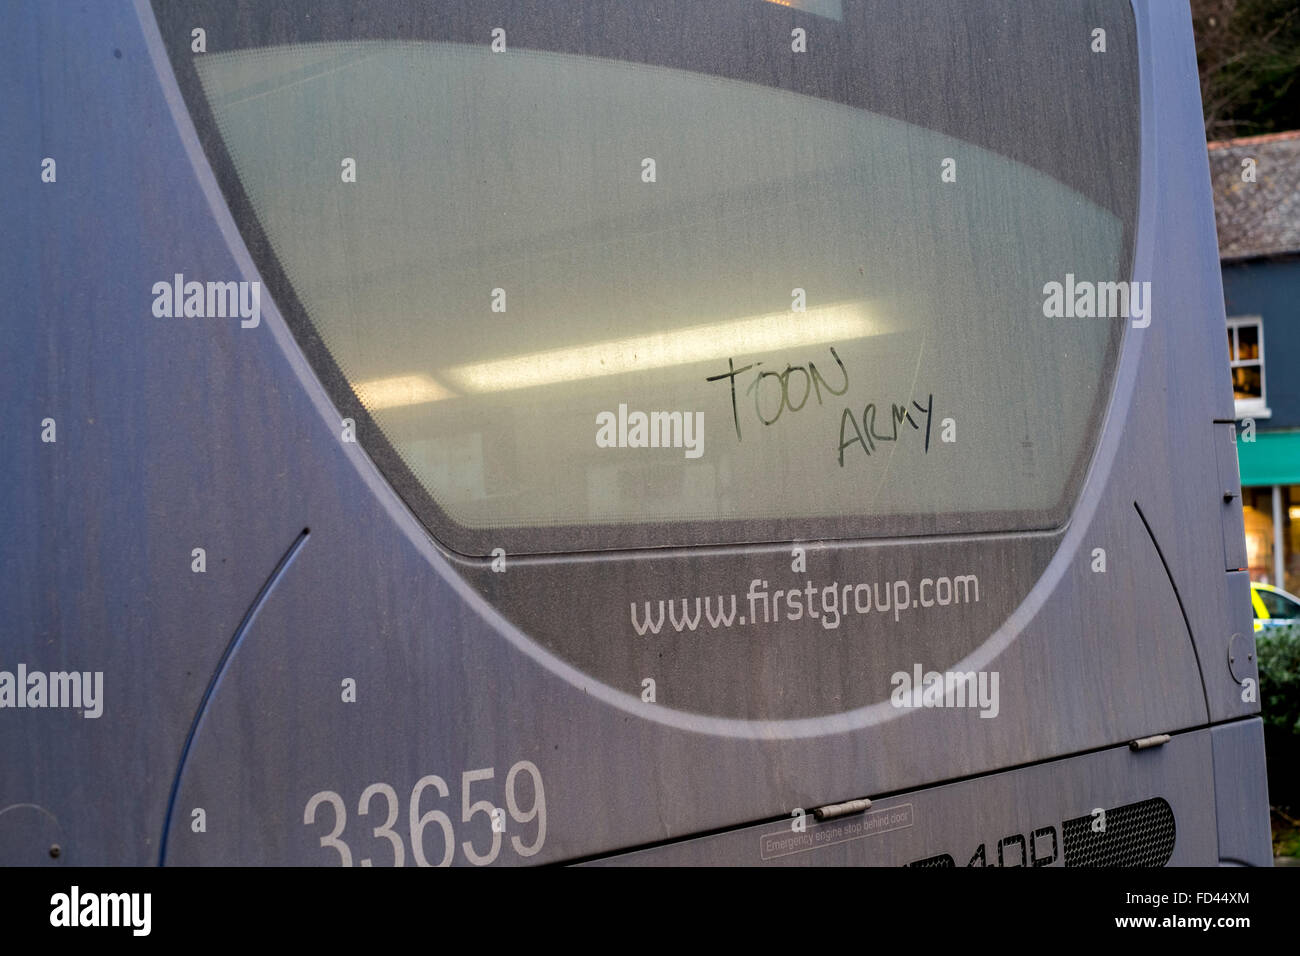 Toon Army, el apodo del Newcastle United FC, escrito en la parte trasera de la ventanilla de un autobús en Falmouth, Cornwall. Foto de stock